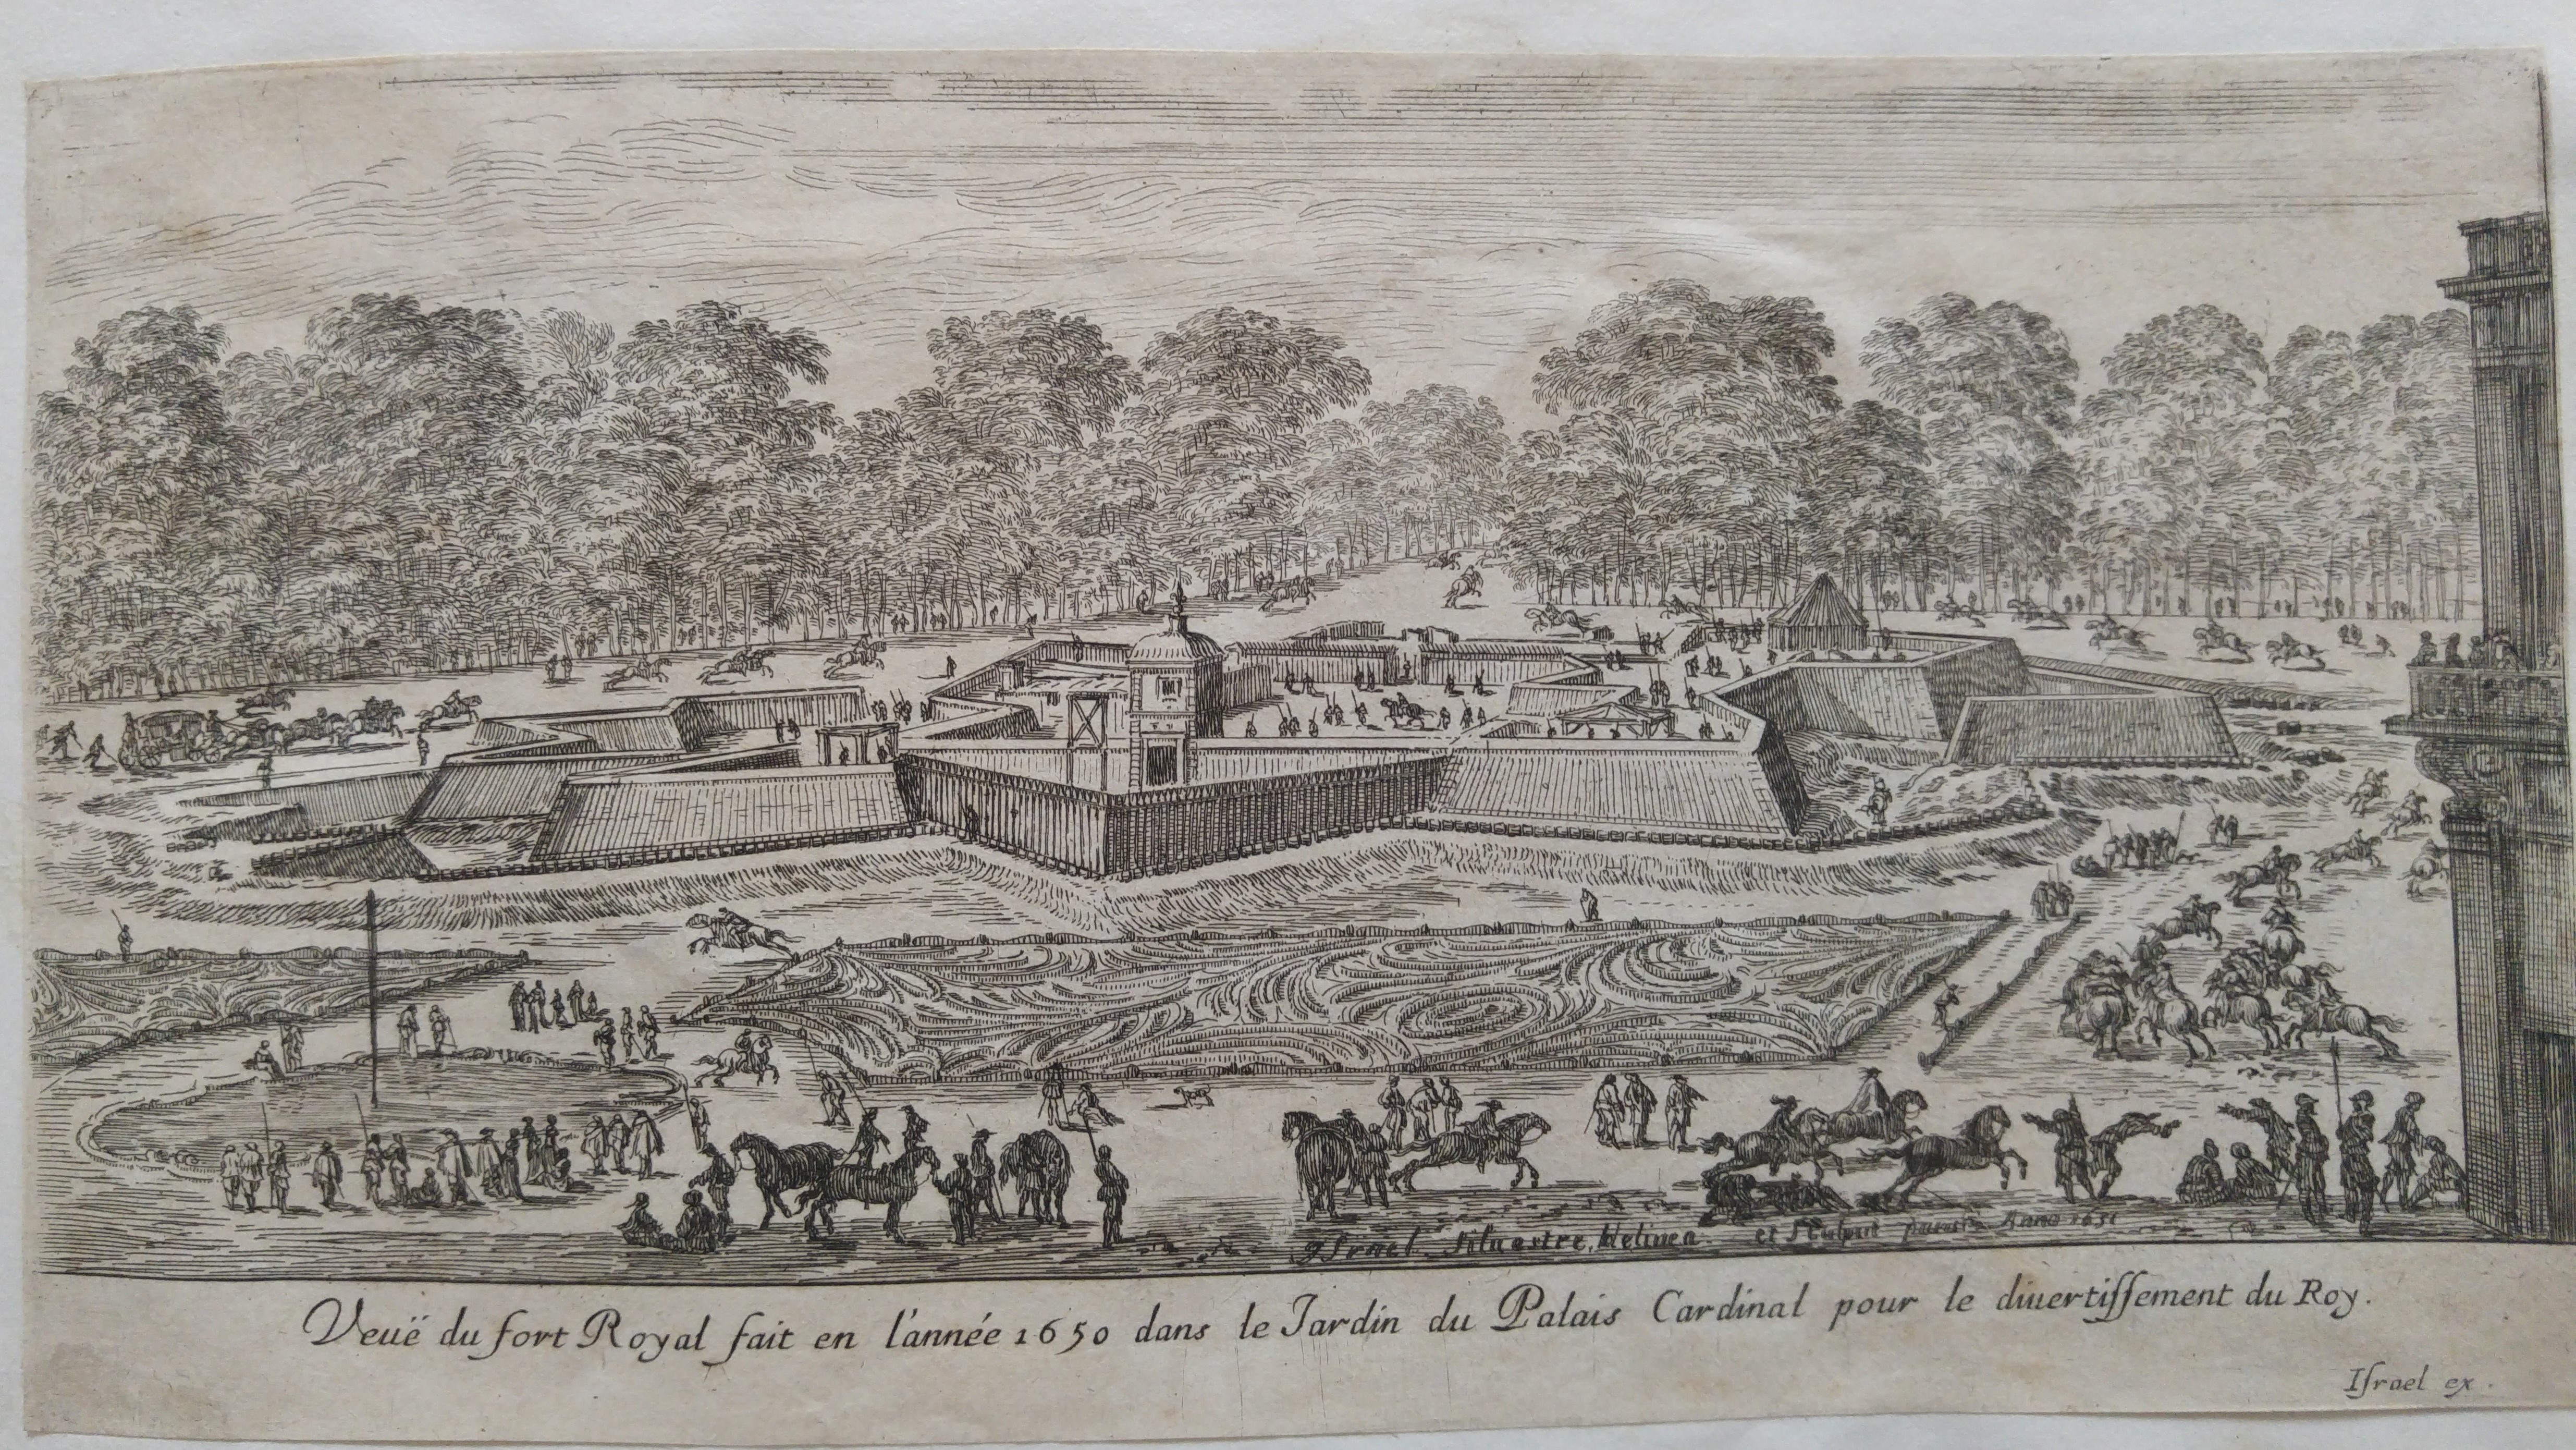 Israël Silvestre : Veuë du fort Royal fait en l'année 1650 dans le Jardin du Palais Cardinal pour le divertissement du Roy.